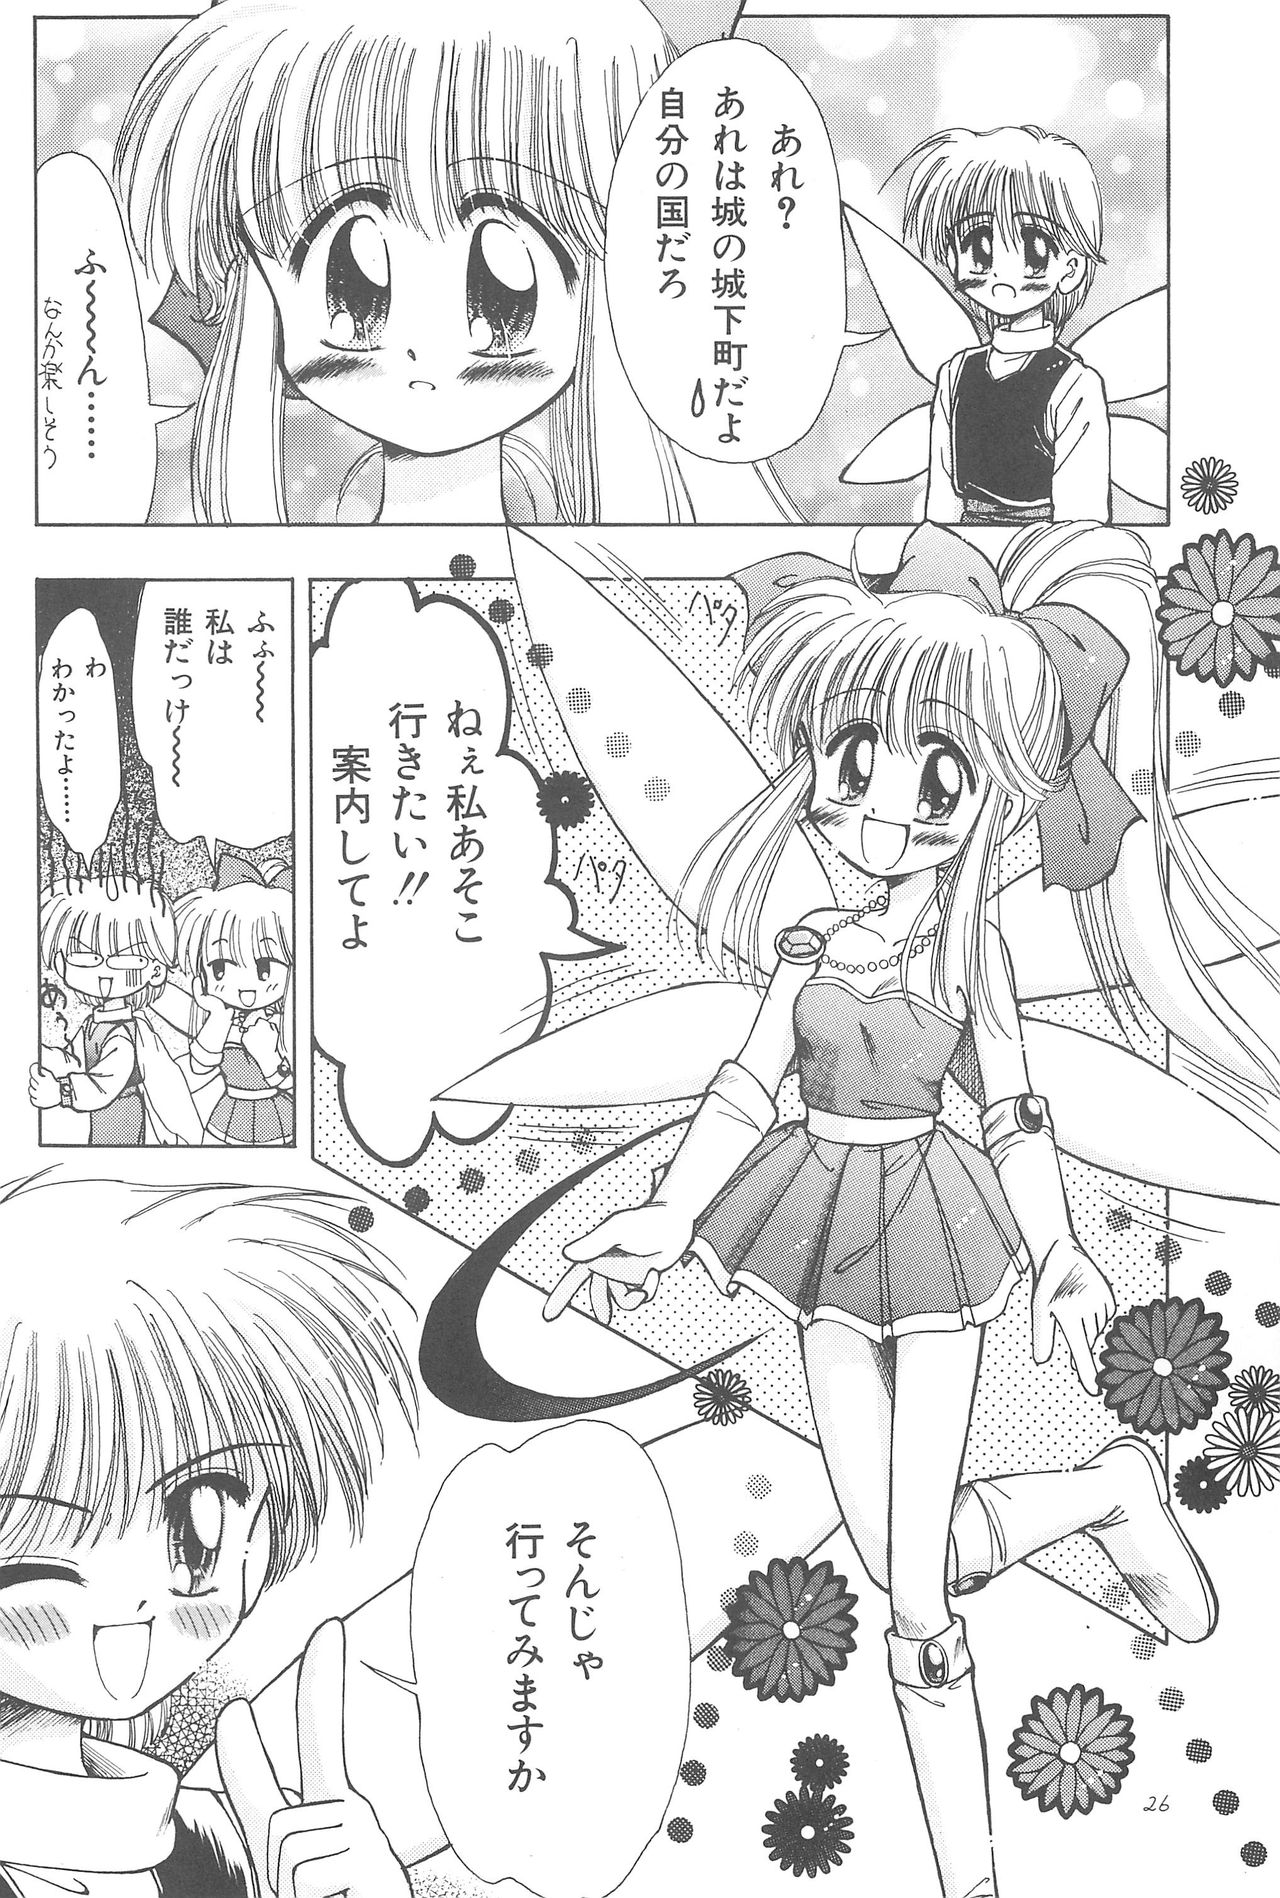 (CR23) [PHOENIX PROJECT (Kamikaze Makoto)] Okosama Lunch Original 1 page 28 full